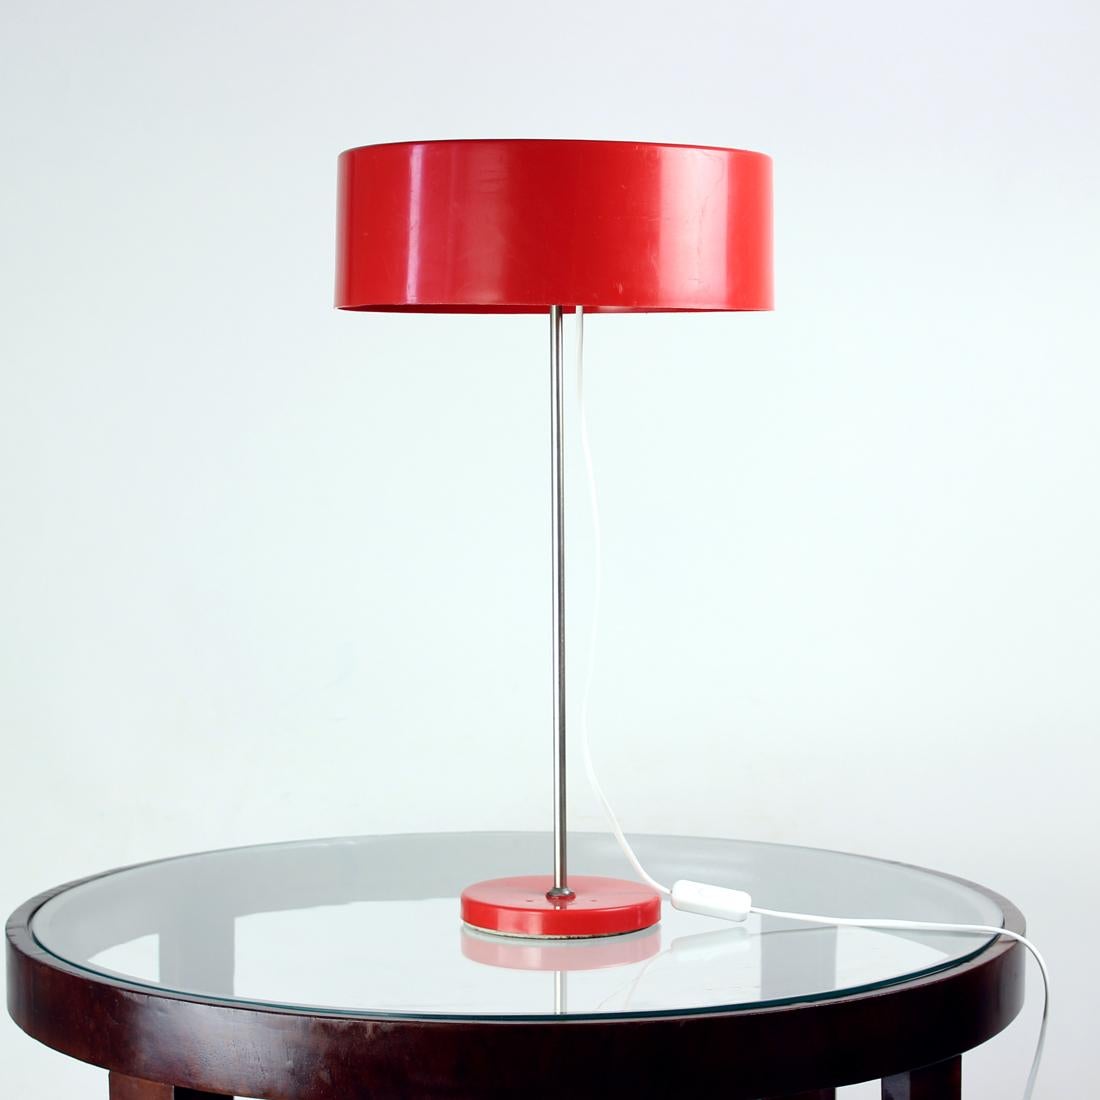 Magnifique lampe de table du milieu du siècle produite par Kamenicky Senov en Tchécoslovaquie dans les années 1970. La lampe est un modèle typique de l'ère spatiale qui utilise des matériaux et des caractéristiques de conception typiques. Les